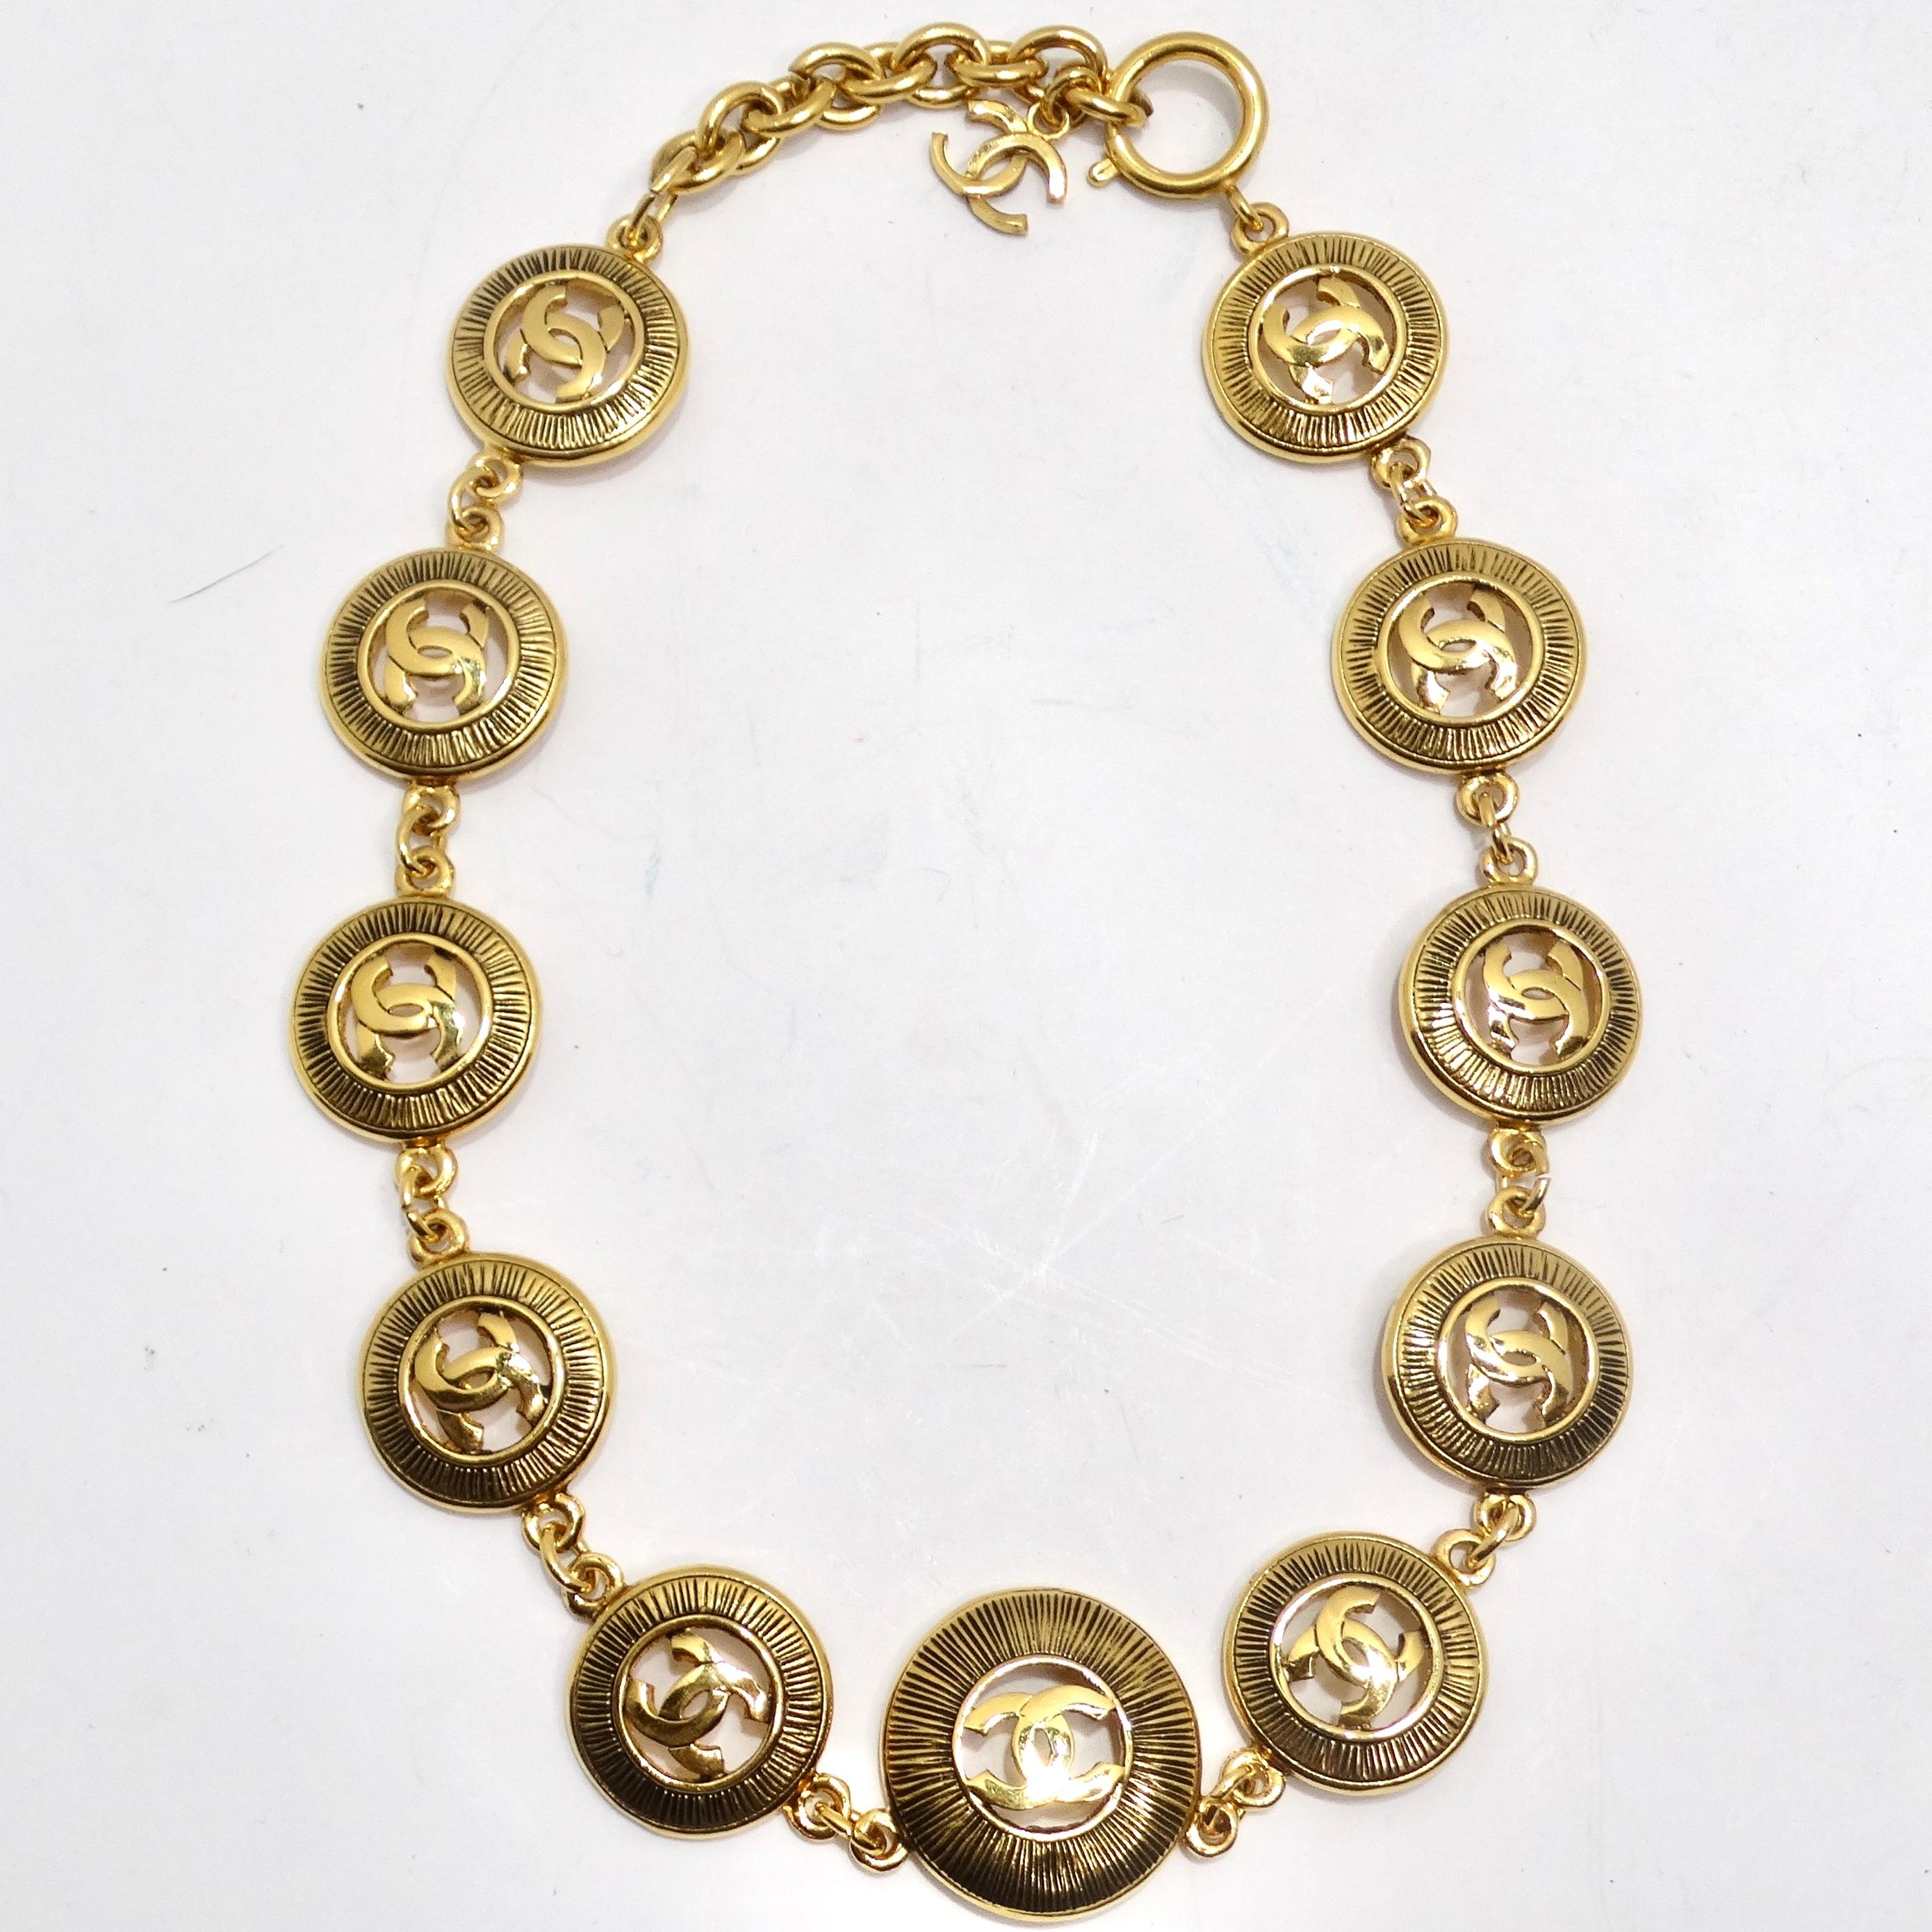 Le collier à médaillon avec logo Chanel des années 1980 est un bijou d'élégance vintage. Ce collier comporte 11 charms découpés en plaqué or avec le logo CC de Chanel et un motif en forme d'étoile solaire. Les logos emblématiques A.I.C. entrelacés